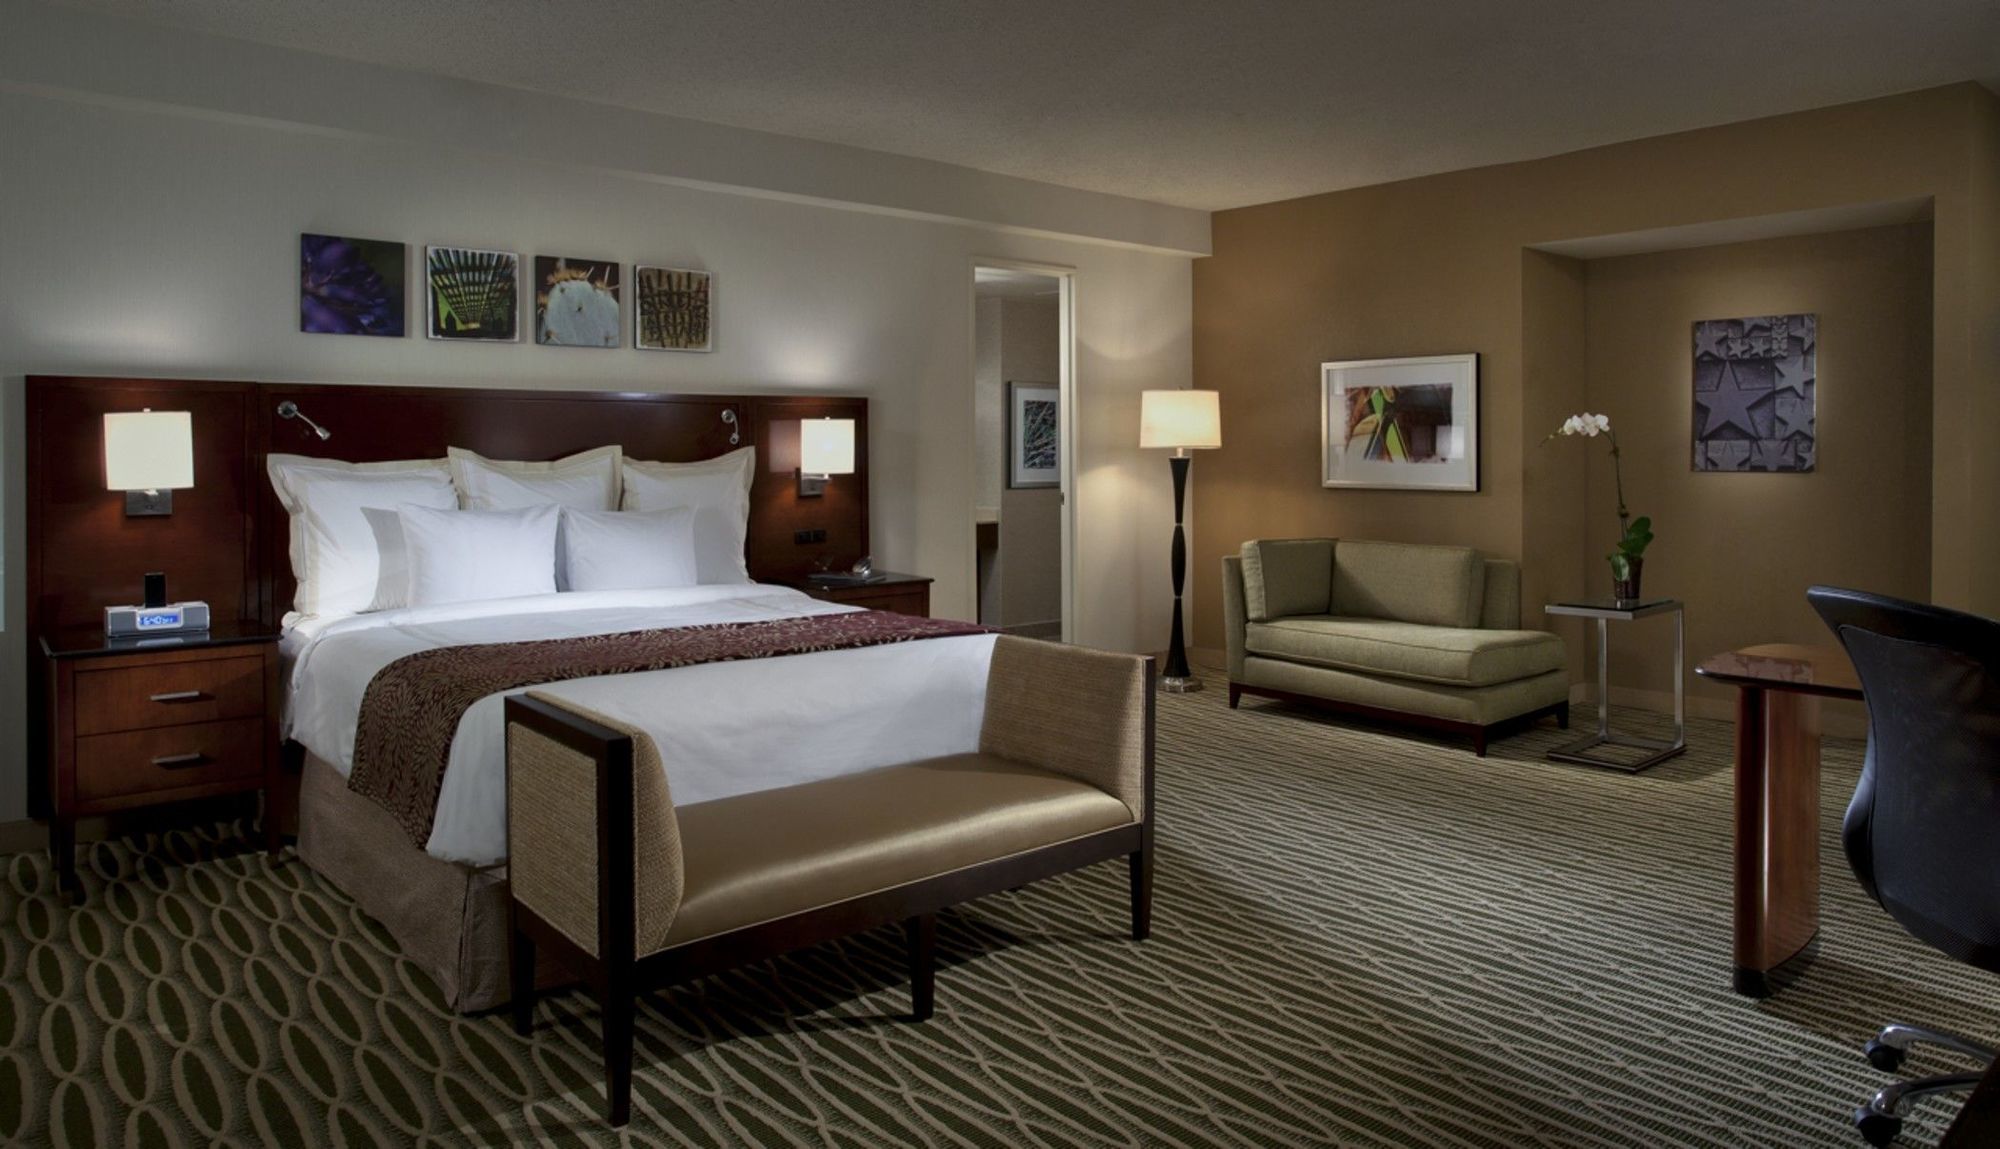 댈러스 메리어트 다운타운 호텔 객실 사진